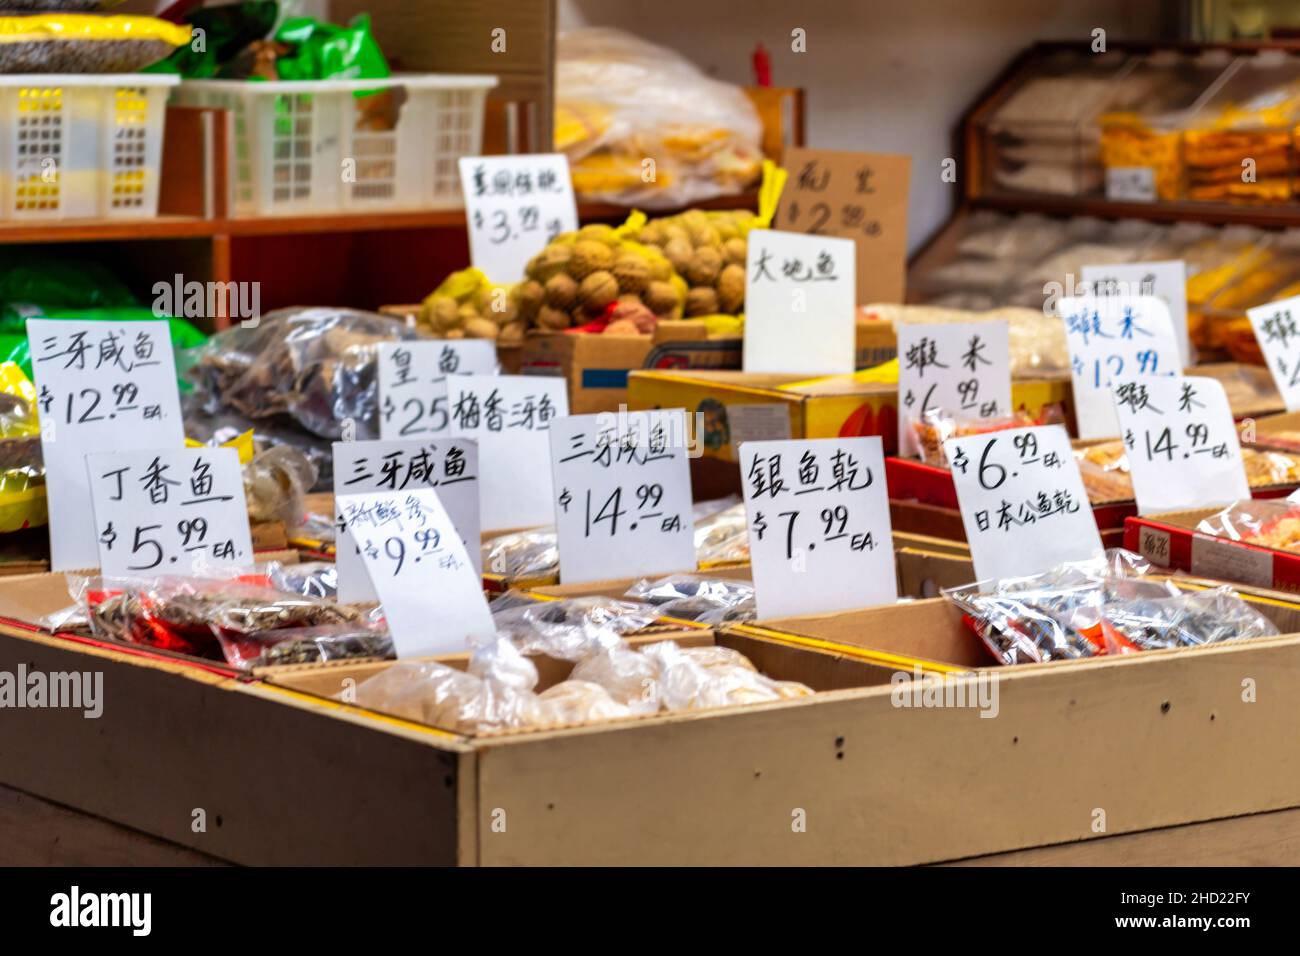 Les prix manuscrits des produits alimentaires dans une entreprise située dans le quartier de Chinatown.2 janvier 2022 Banque D'Images